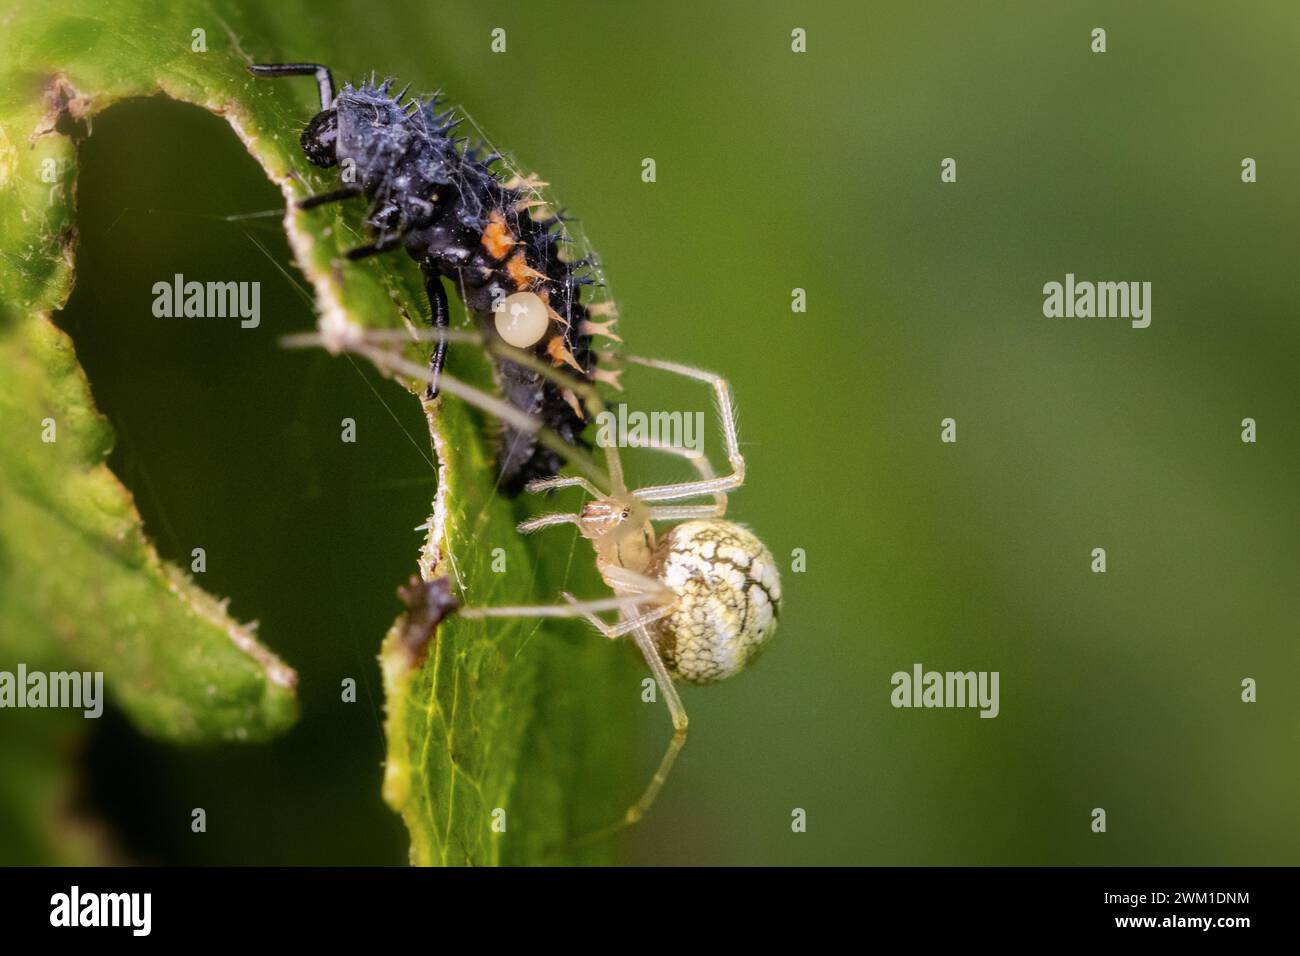 Gewöhnliche Candy-Striped Spider (Enoplognatha ovata), die eine Marienkäfer-Larve als Nahrung einhüllt, britische Tierwelt Stockfoto